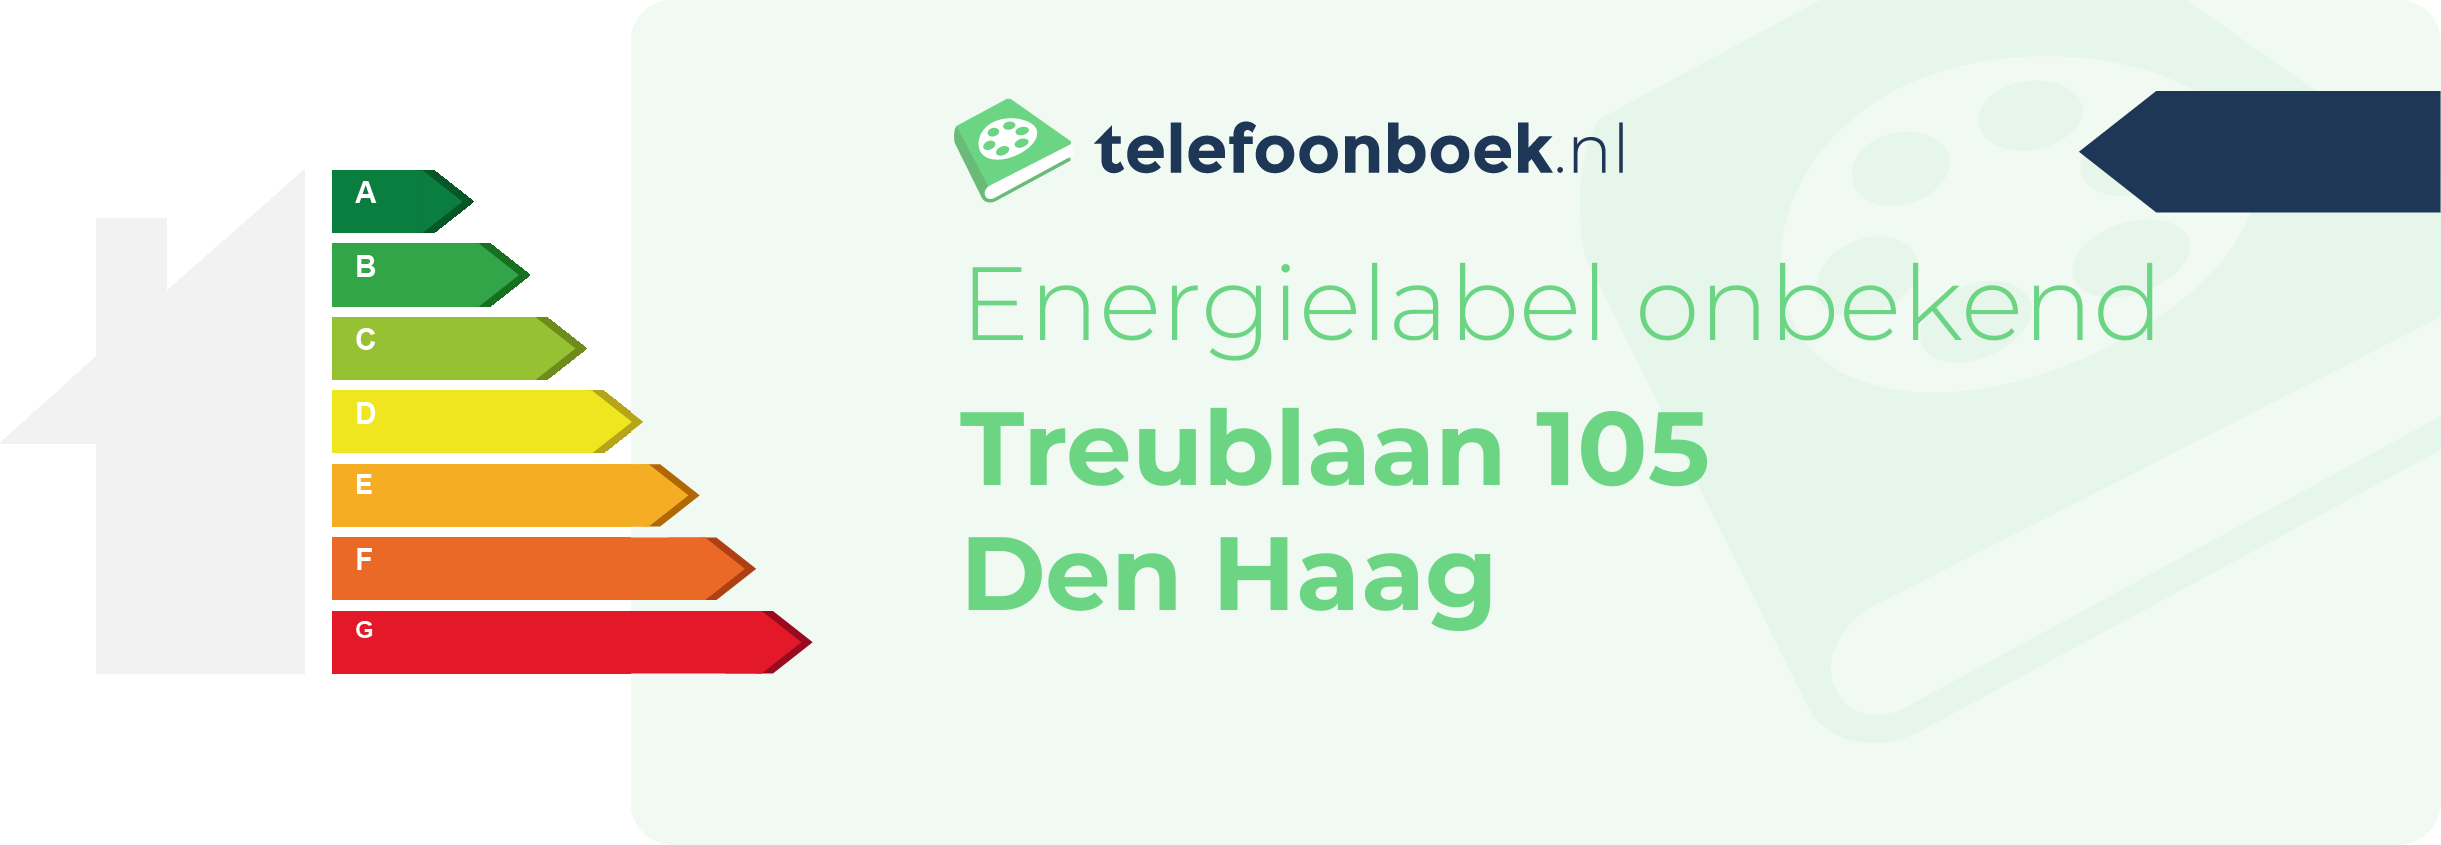 Energielabel Treublaan 105 Den Haag